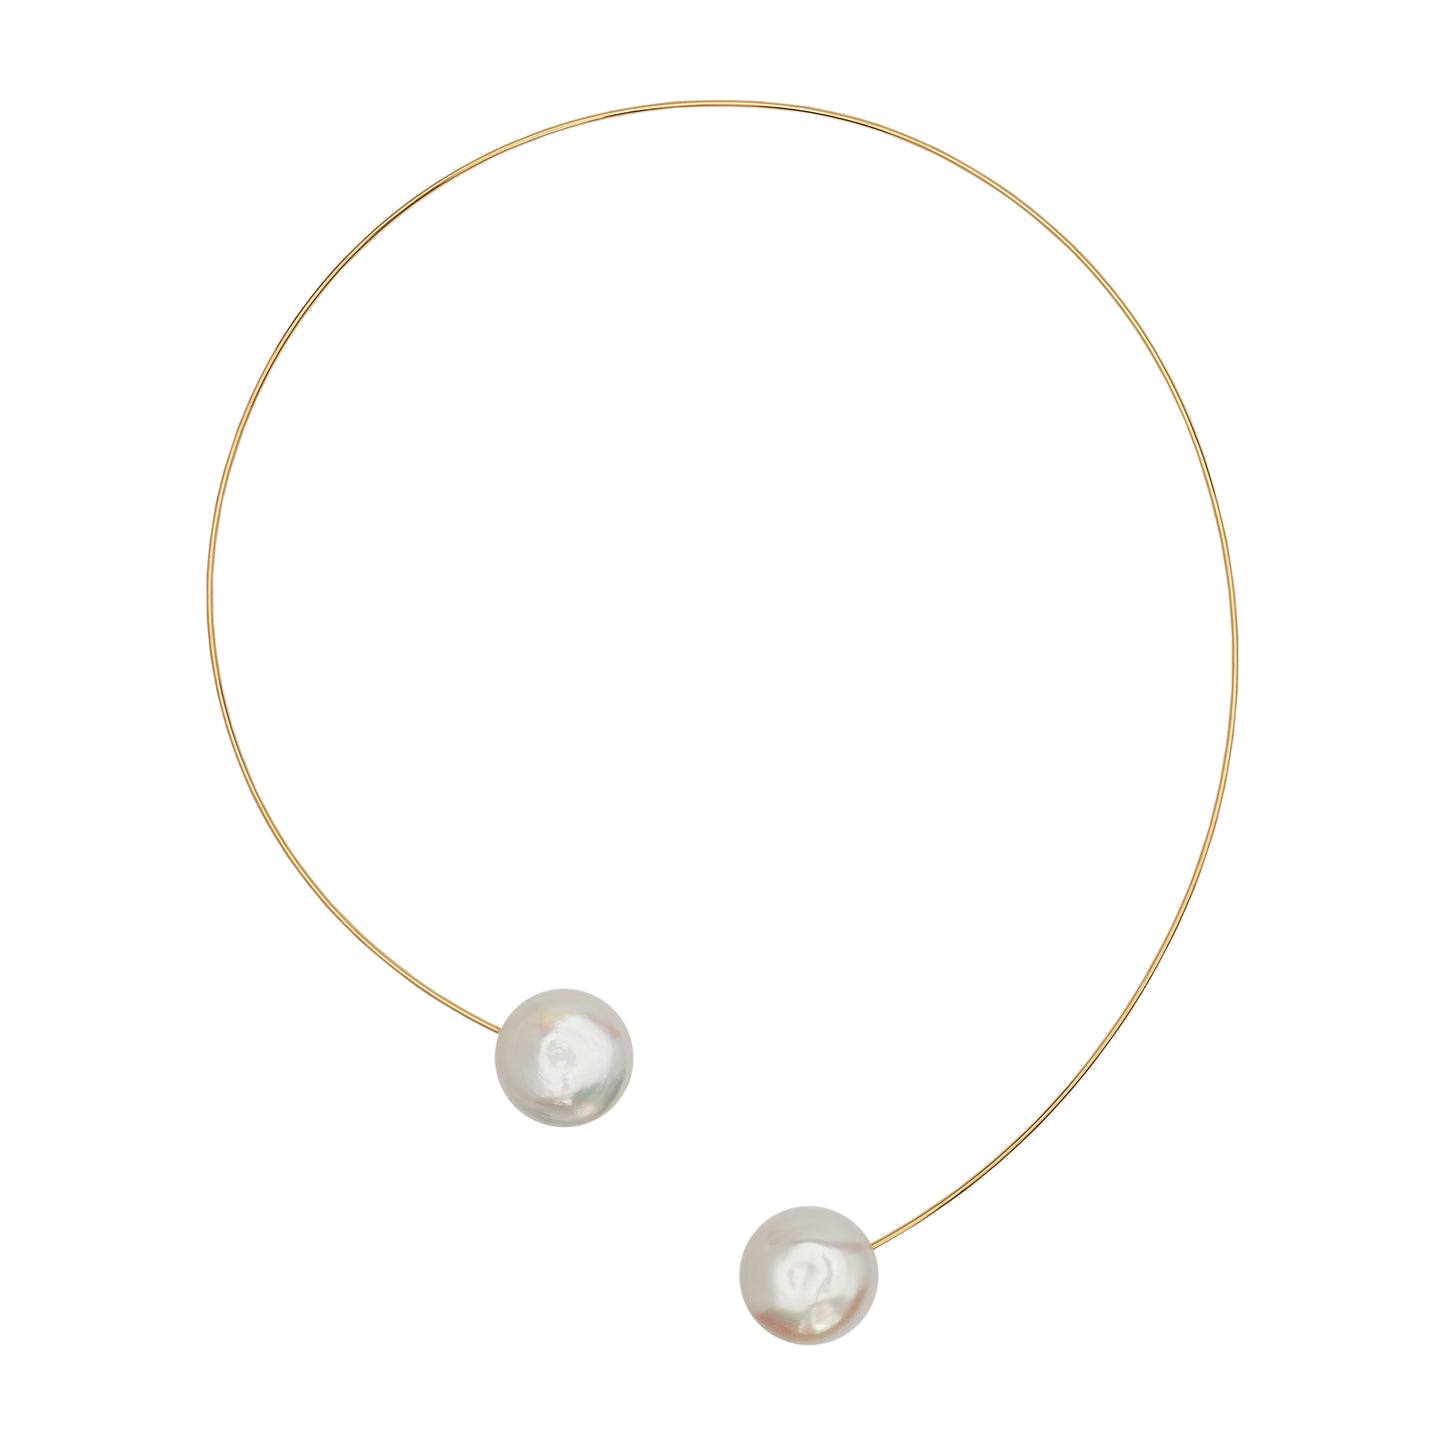 Round Neck Wire with White Round Pearls (12mm)